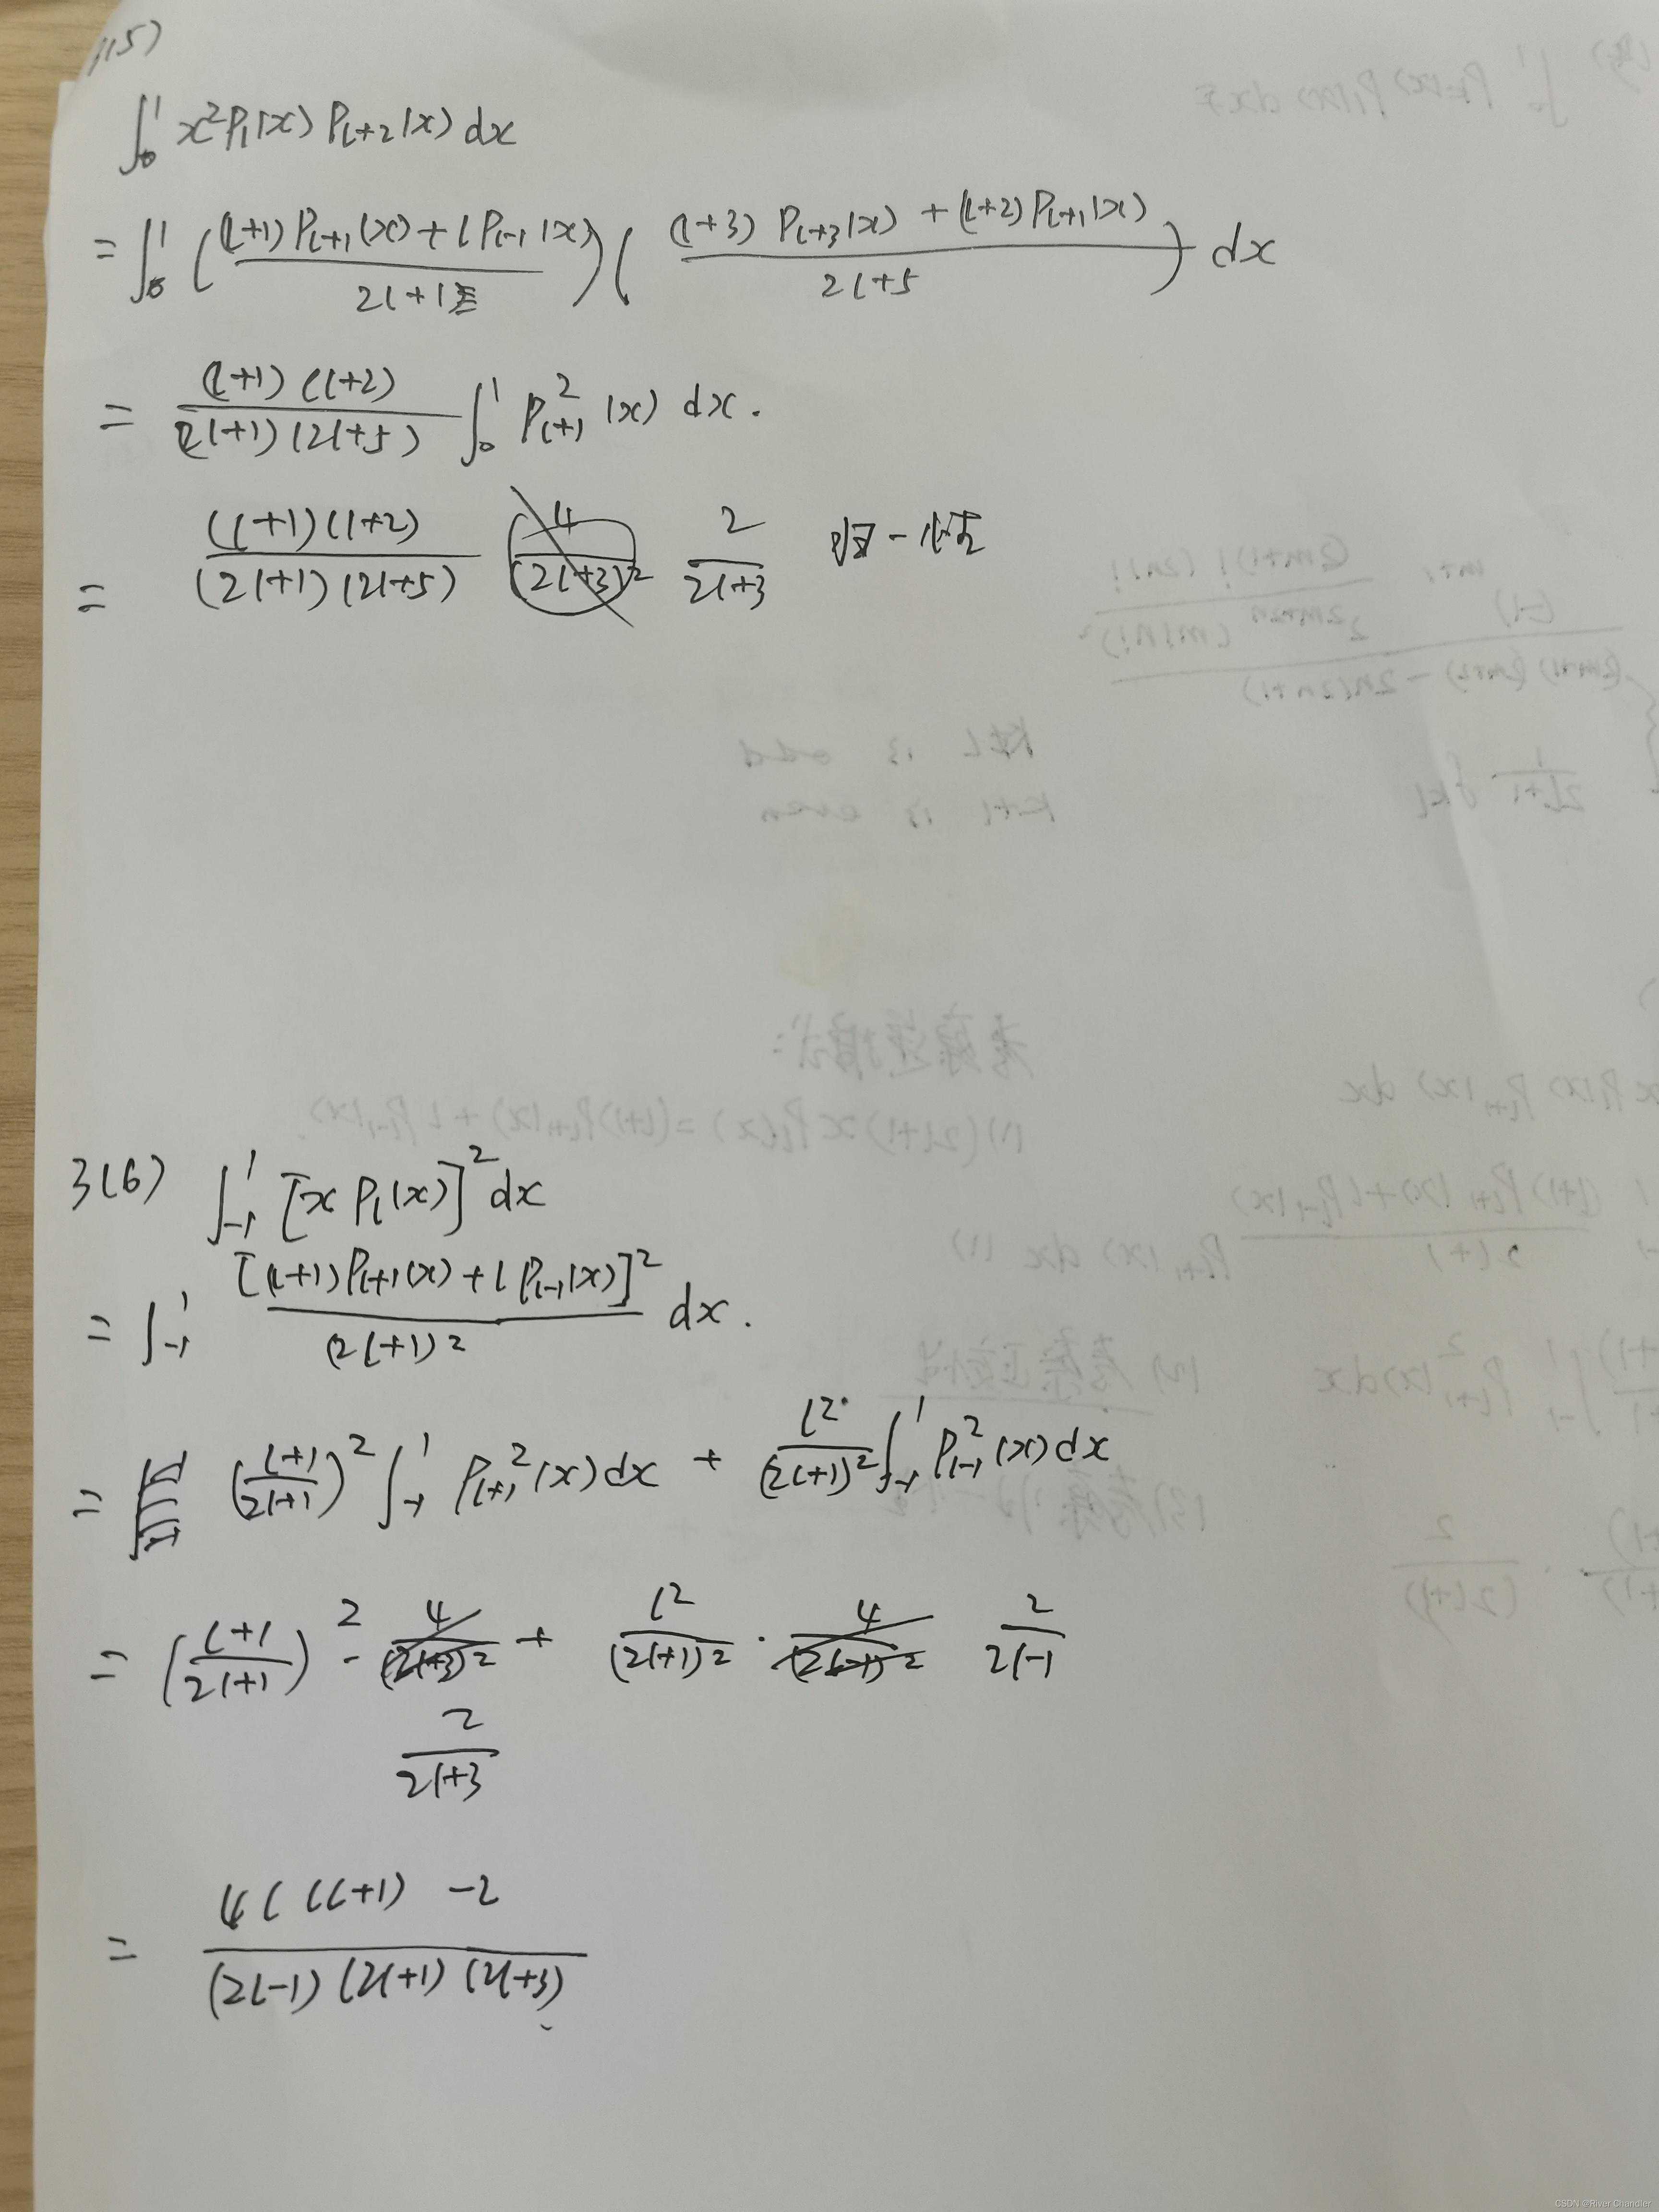 数学物理方法第三版吴崇试pdf_数学物理方程第三版答案谷超豪